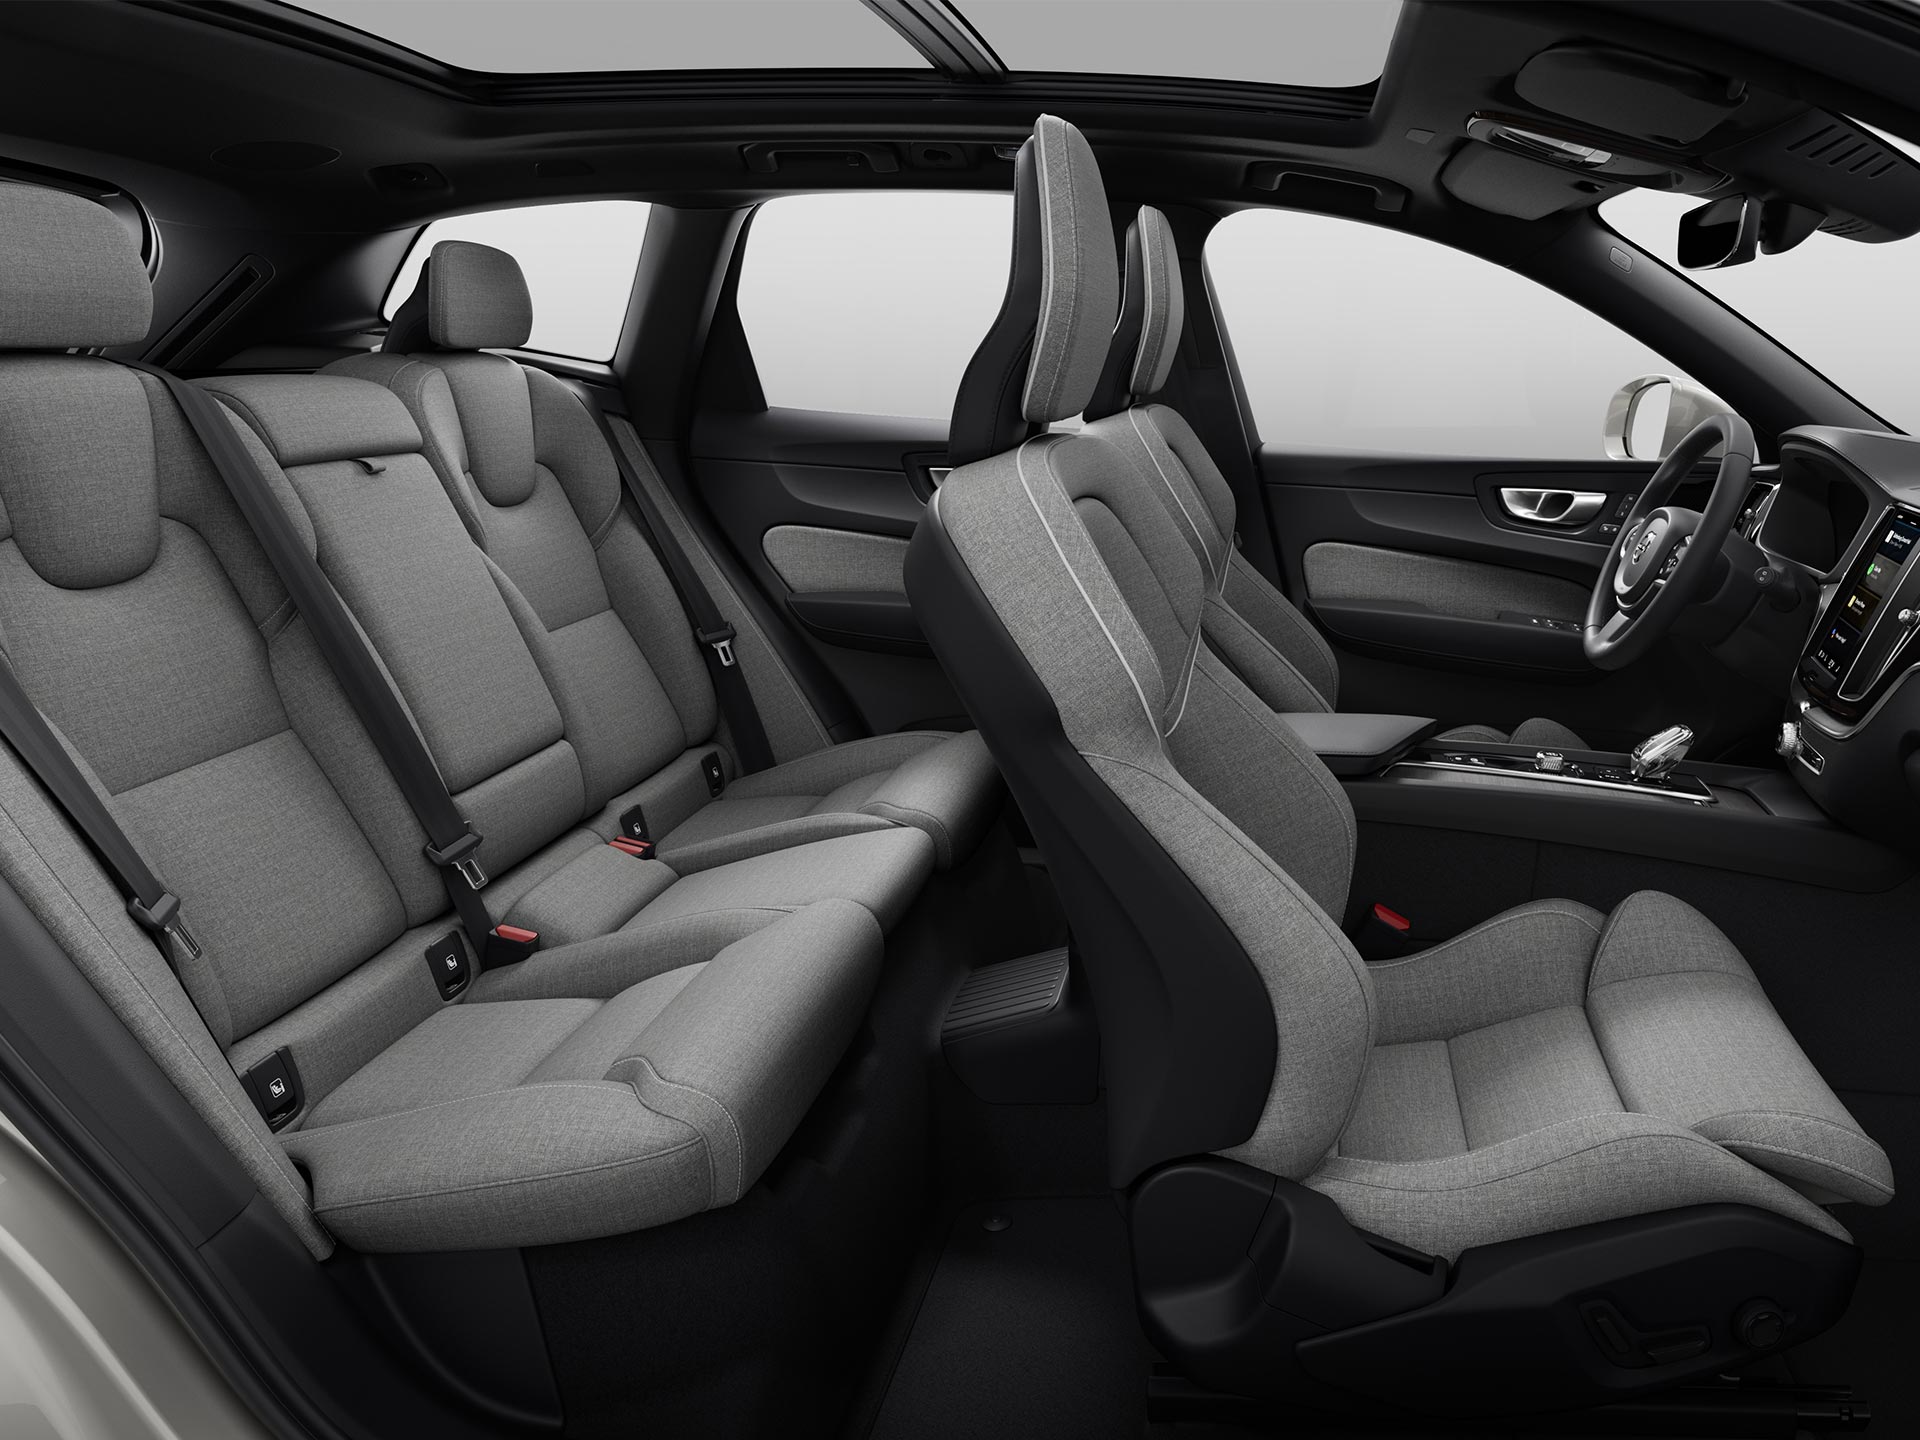 Vidvinkelbillede af den rummelige kabine og de polstrede sæder i en Volvo SUV.